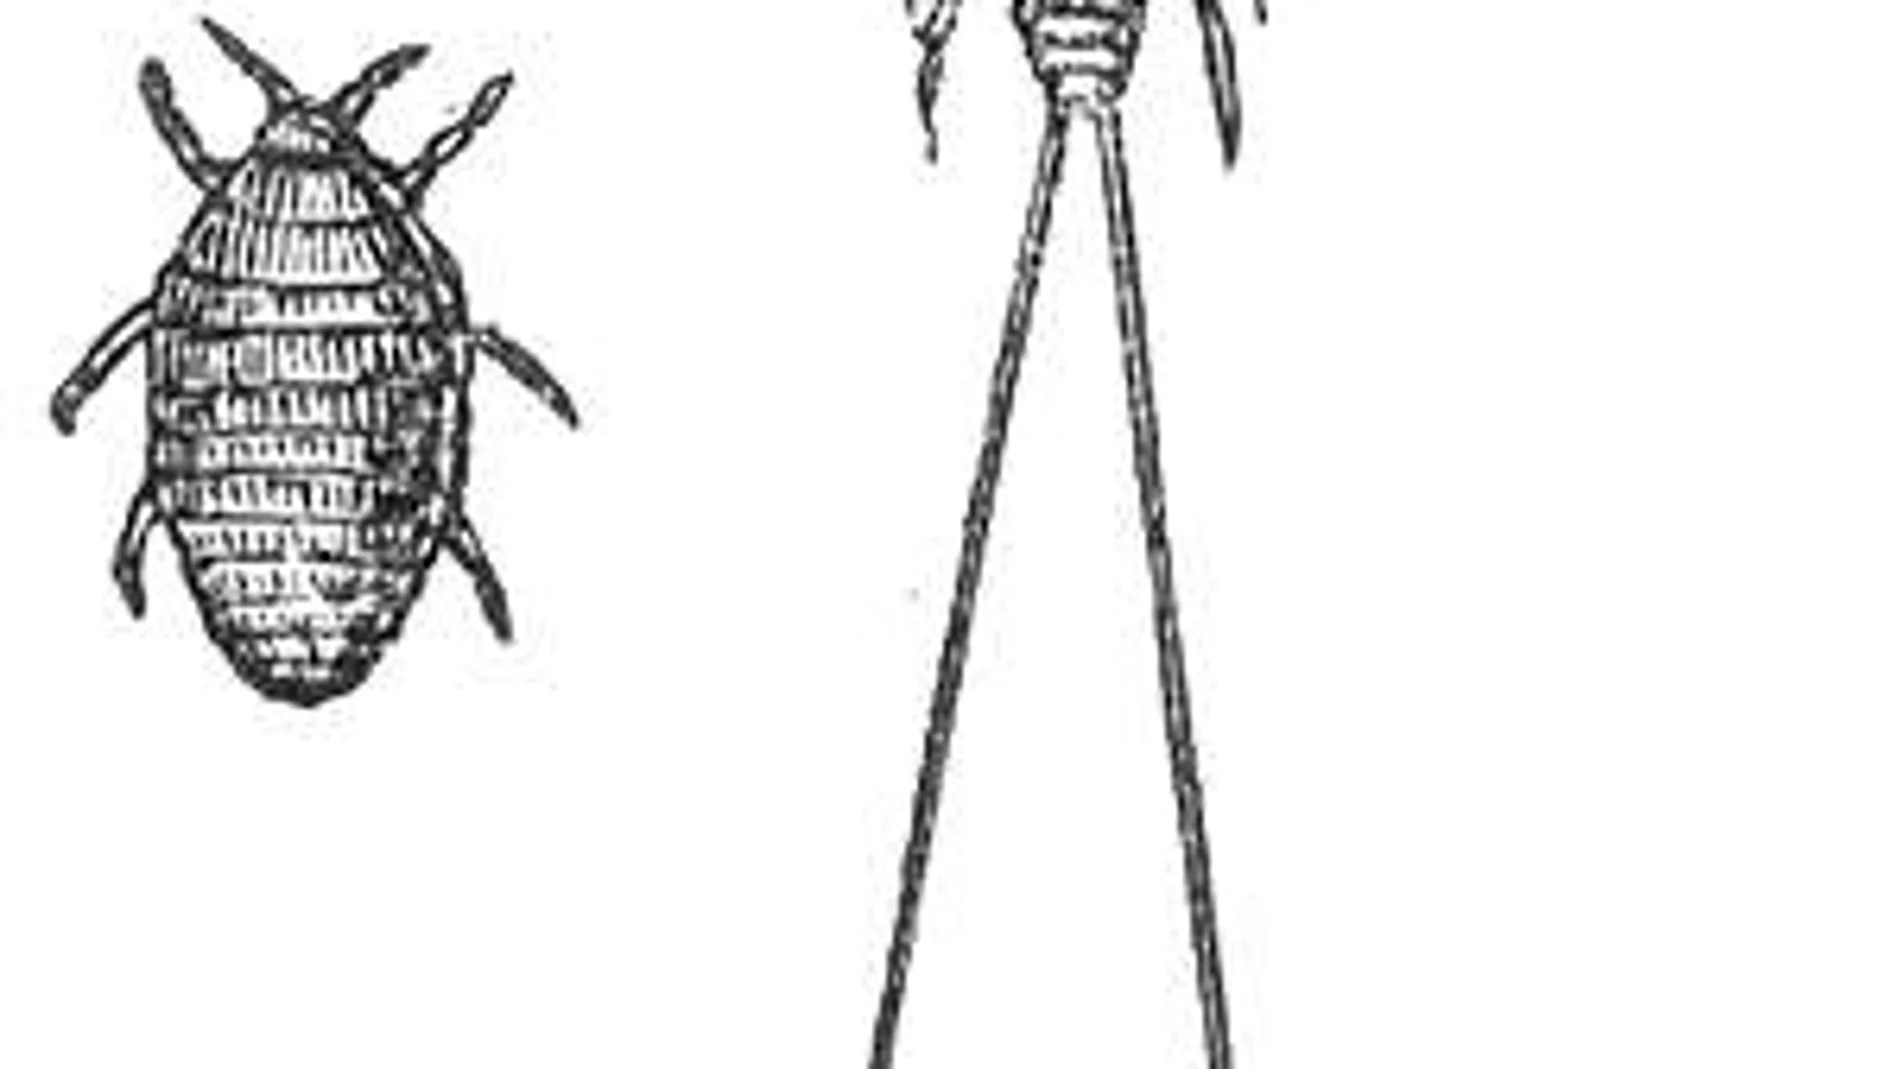 Hembra (izquierda) y macho (derecha) de cochinilla. Fuente: Wikipedia